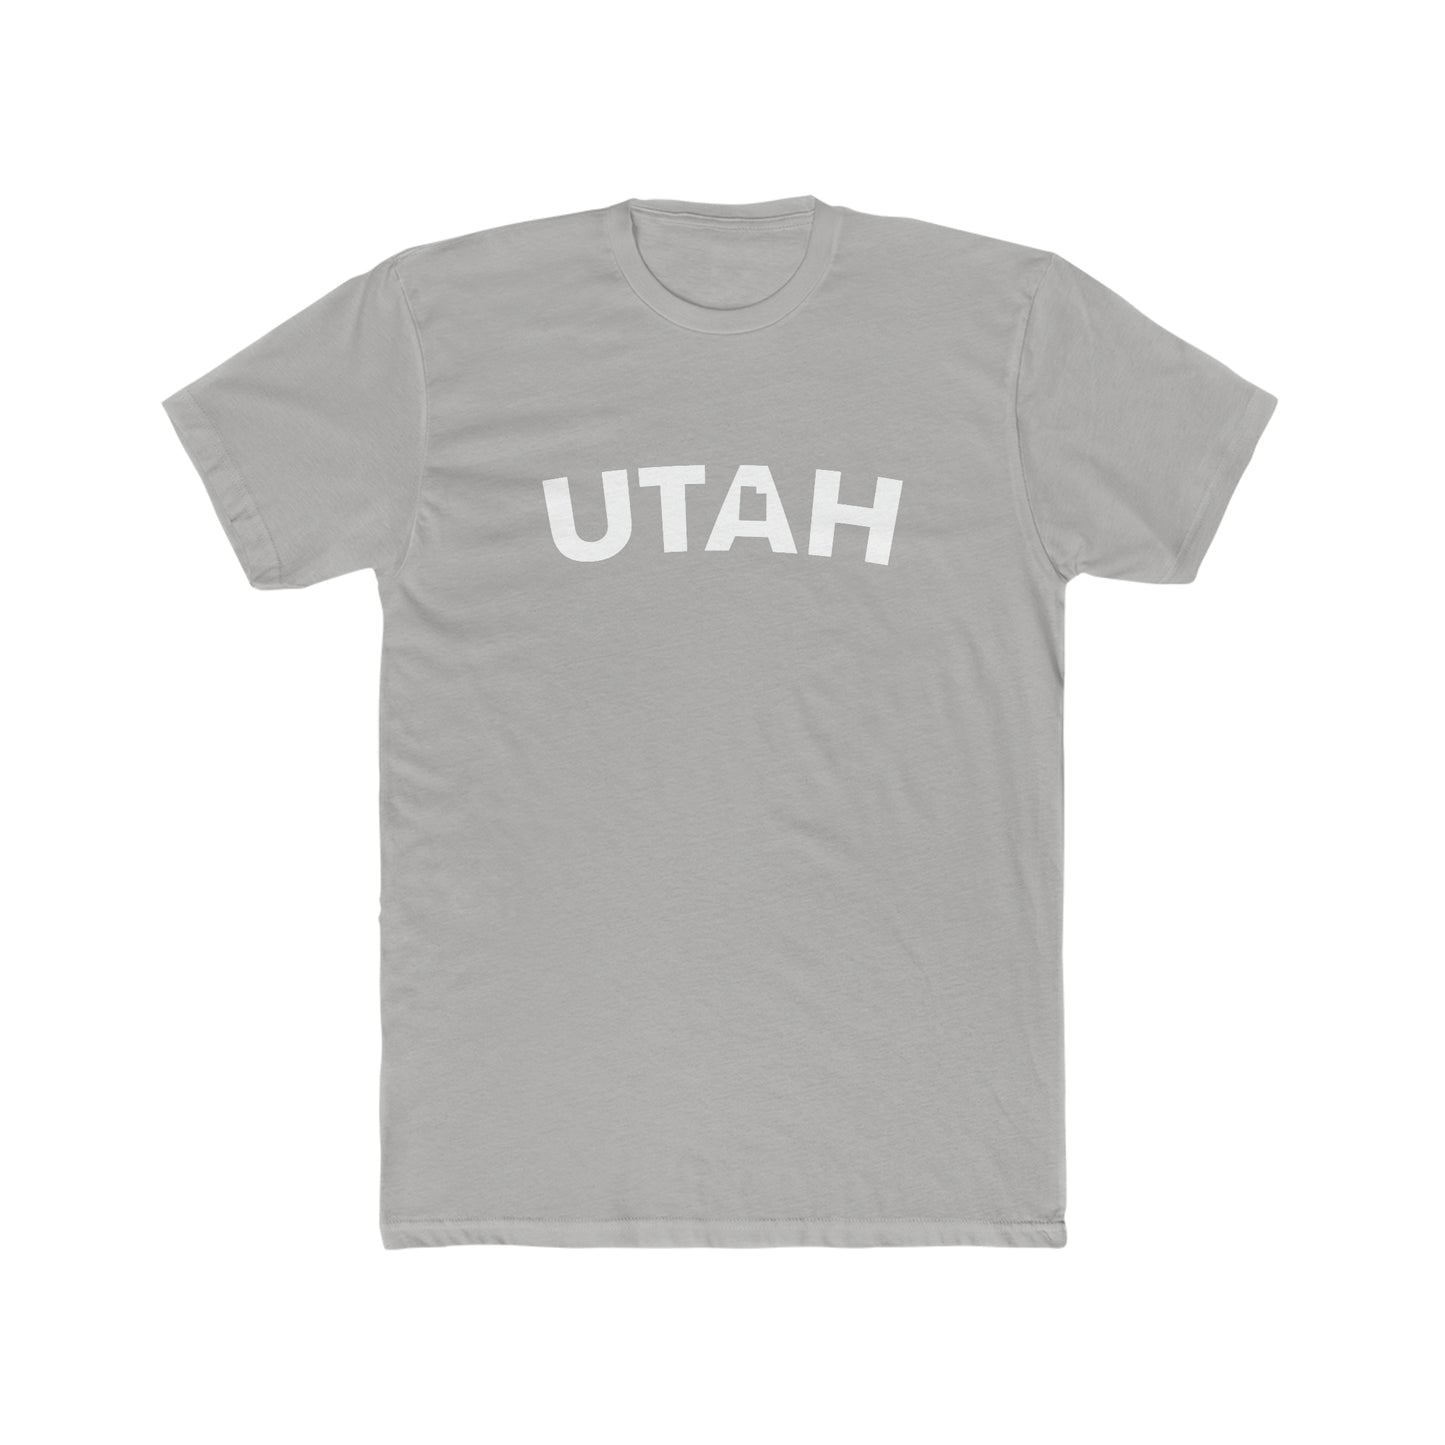 Utah Shirt Salt Lake City Provo Fun Utah Gift Men's Cotton Crew Tee